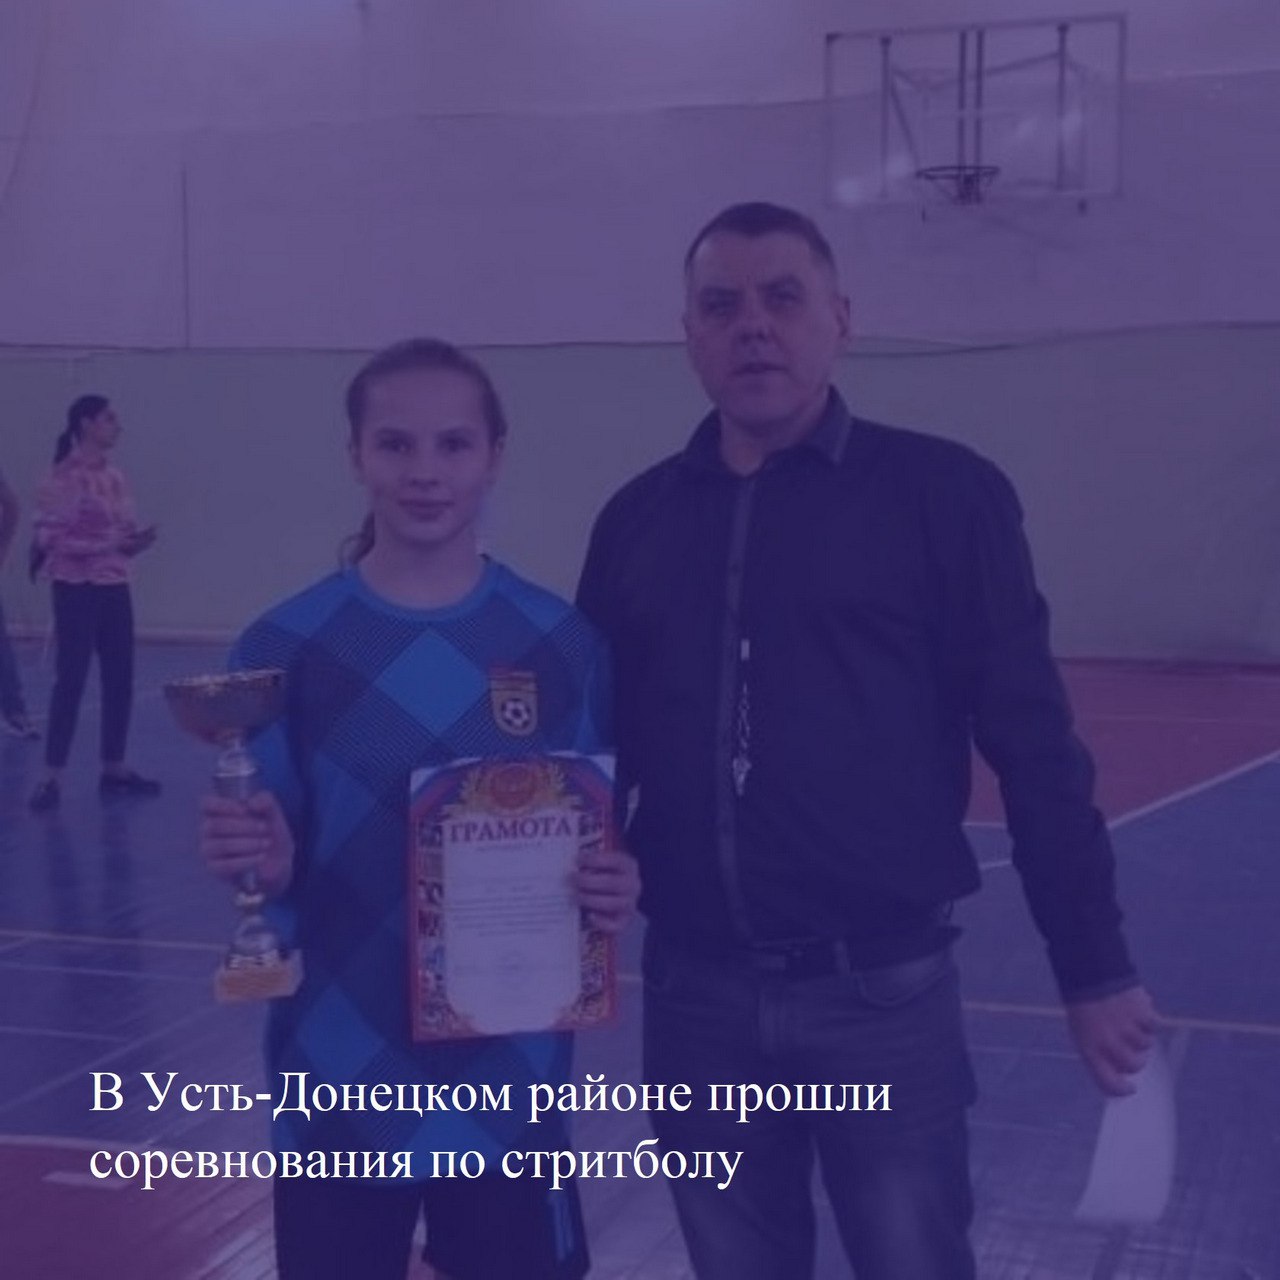 В Усть-Донецком районе прошли соревнования по стритболу